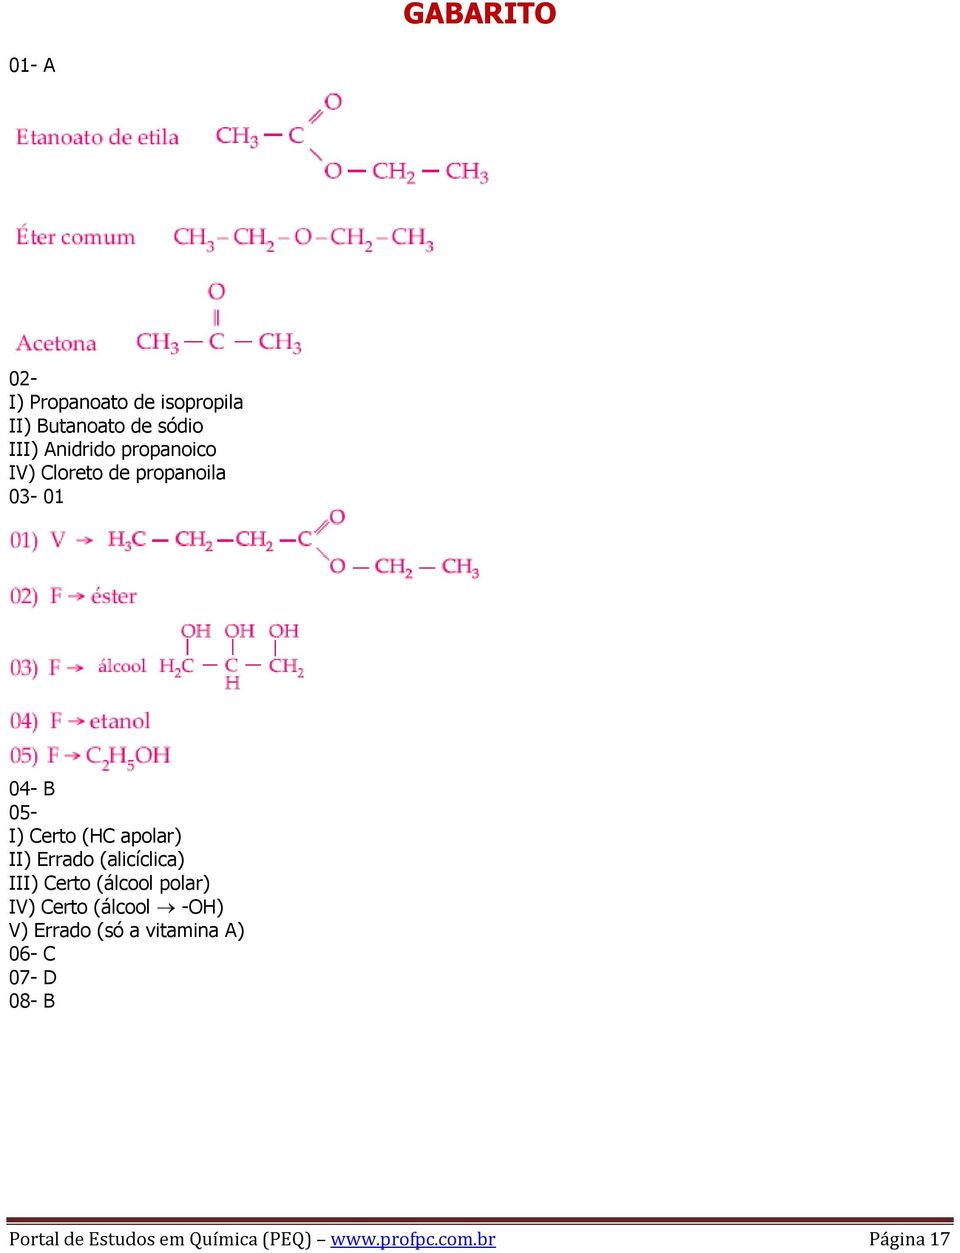 (alicíclica) III) Certo (álcool polar) IV) Certo (álcool -OH) V) Errado (só a